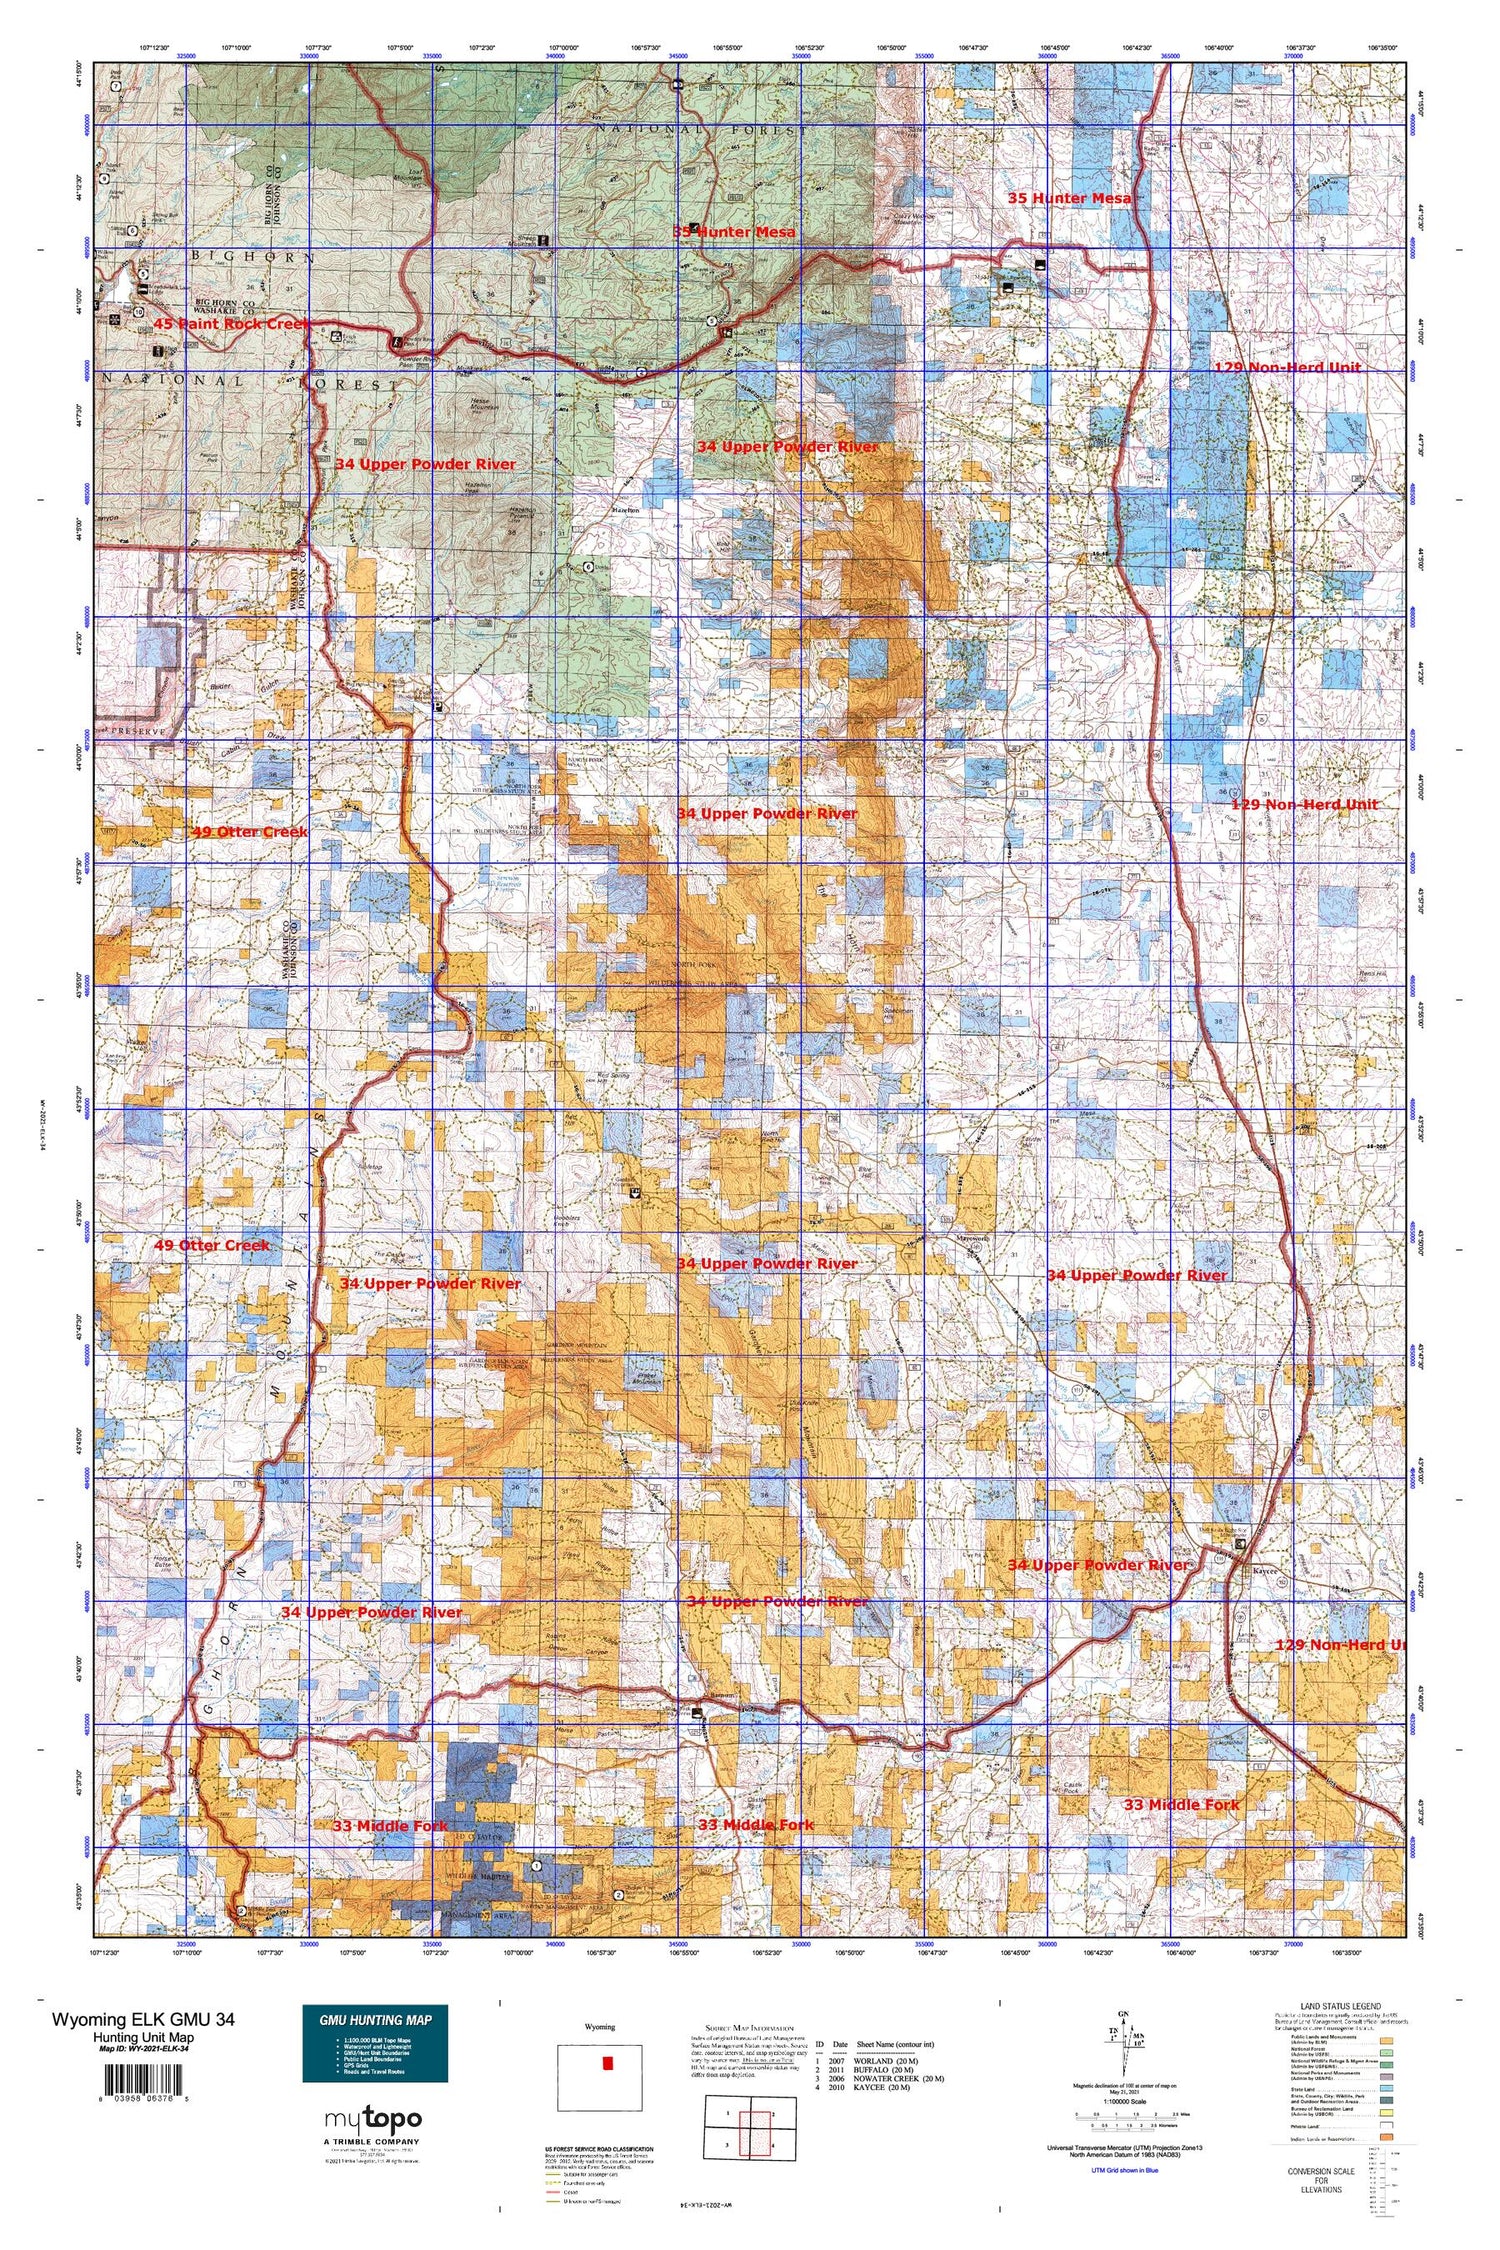 Wyoming Elk GMU 34 Map Image